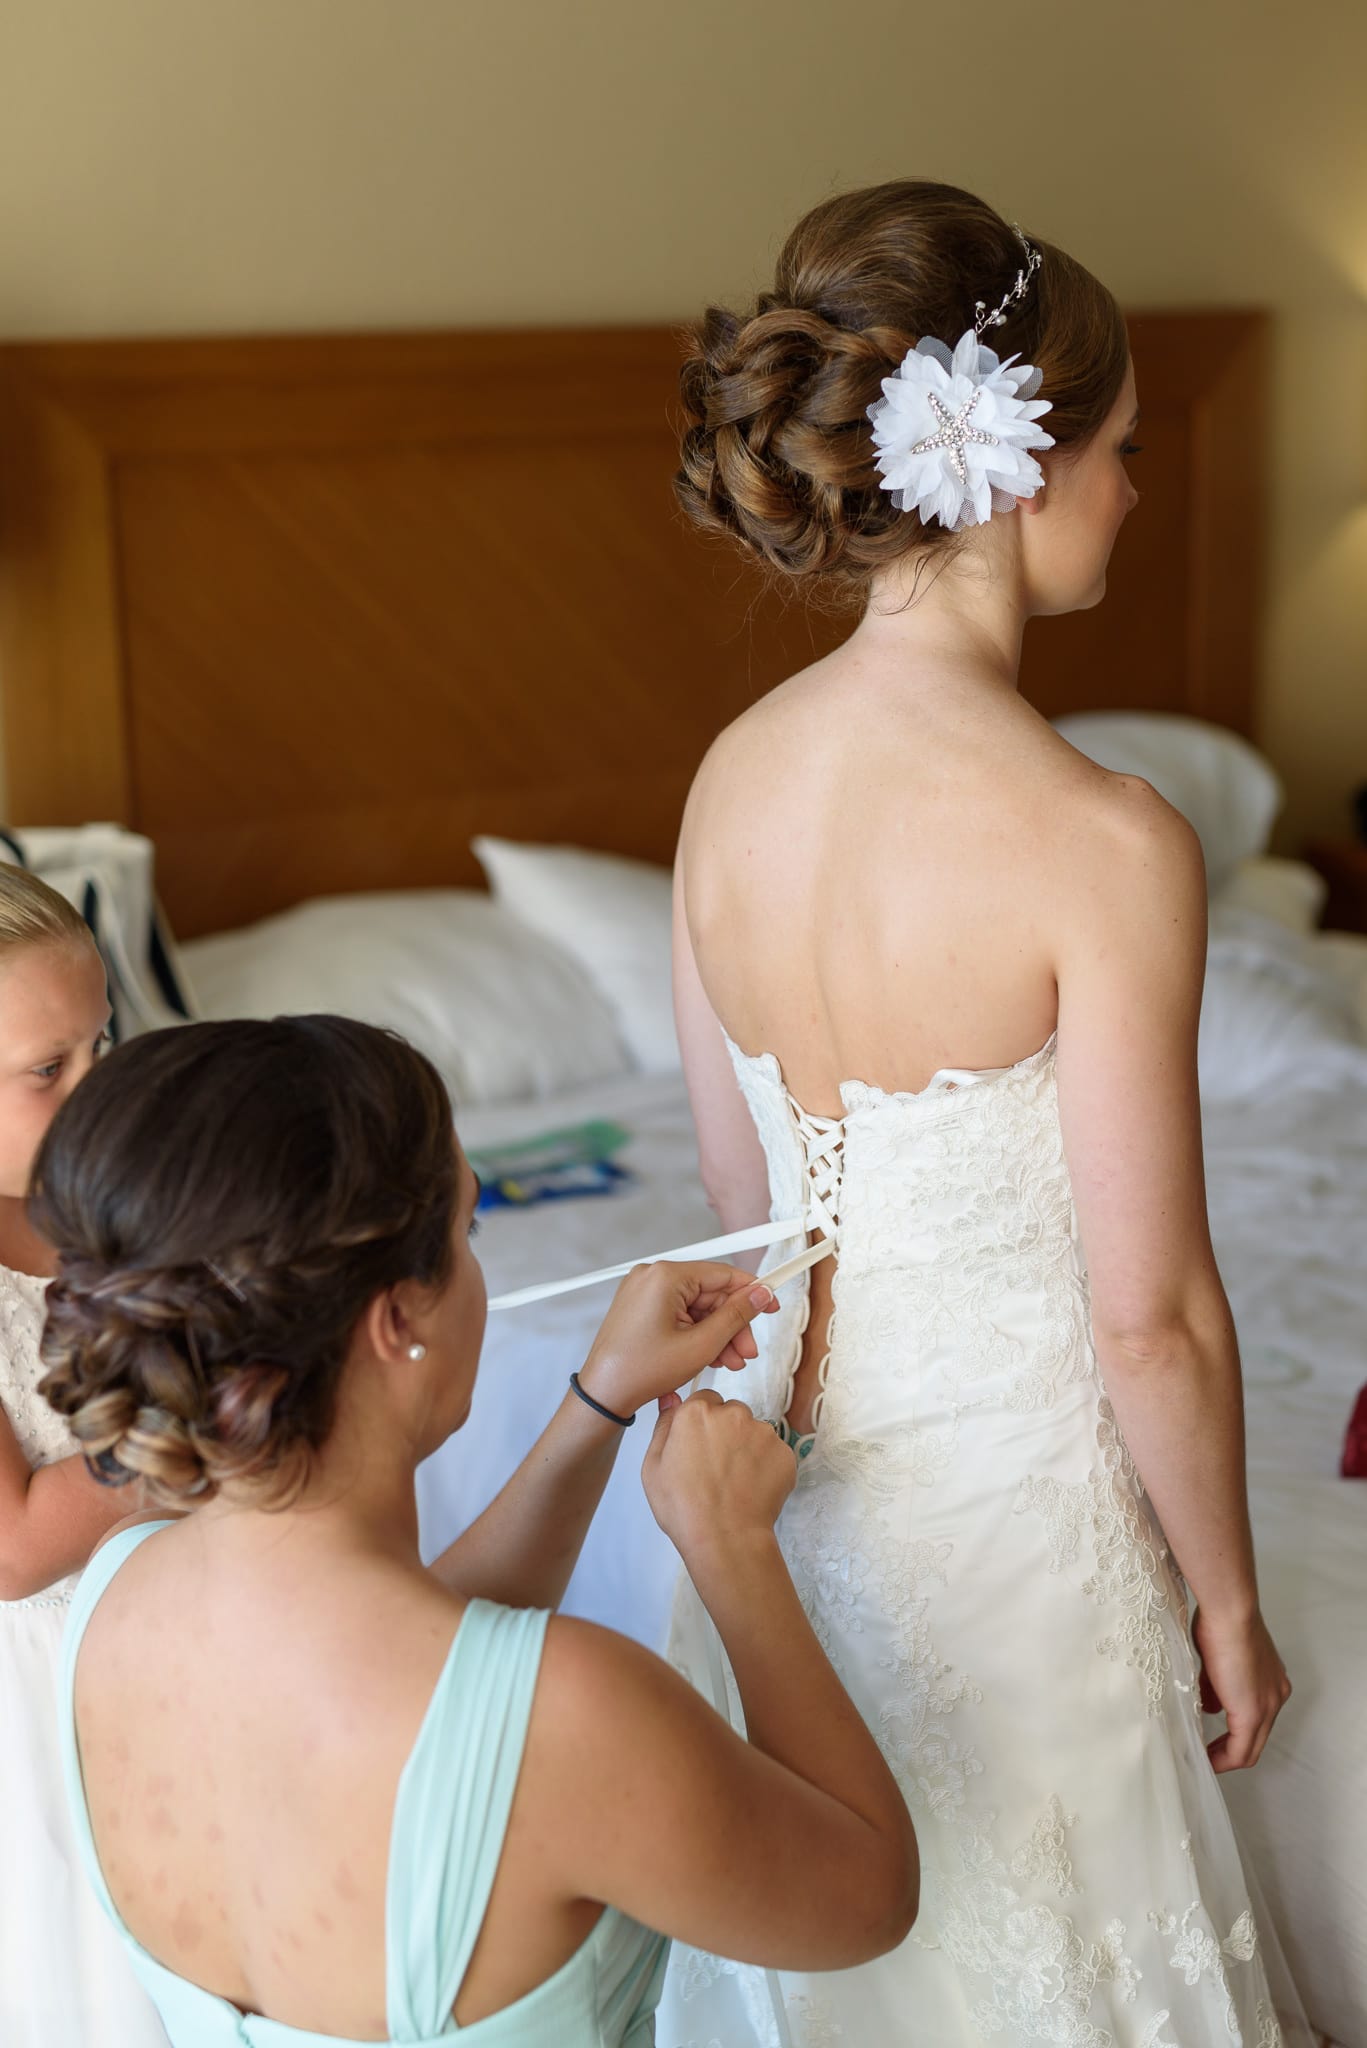 Lacing up bride's dress - Hilton at Kingston Plantation